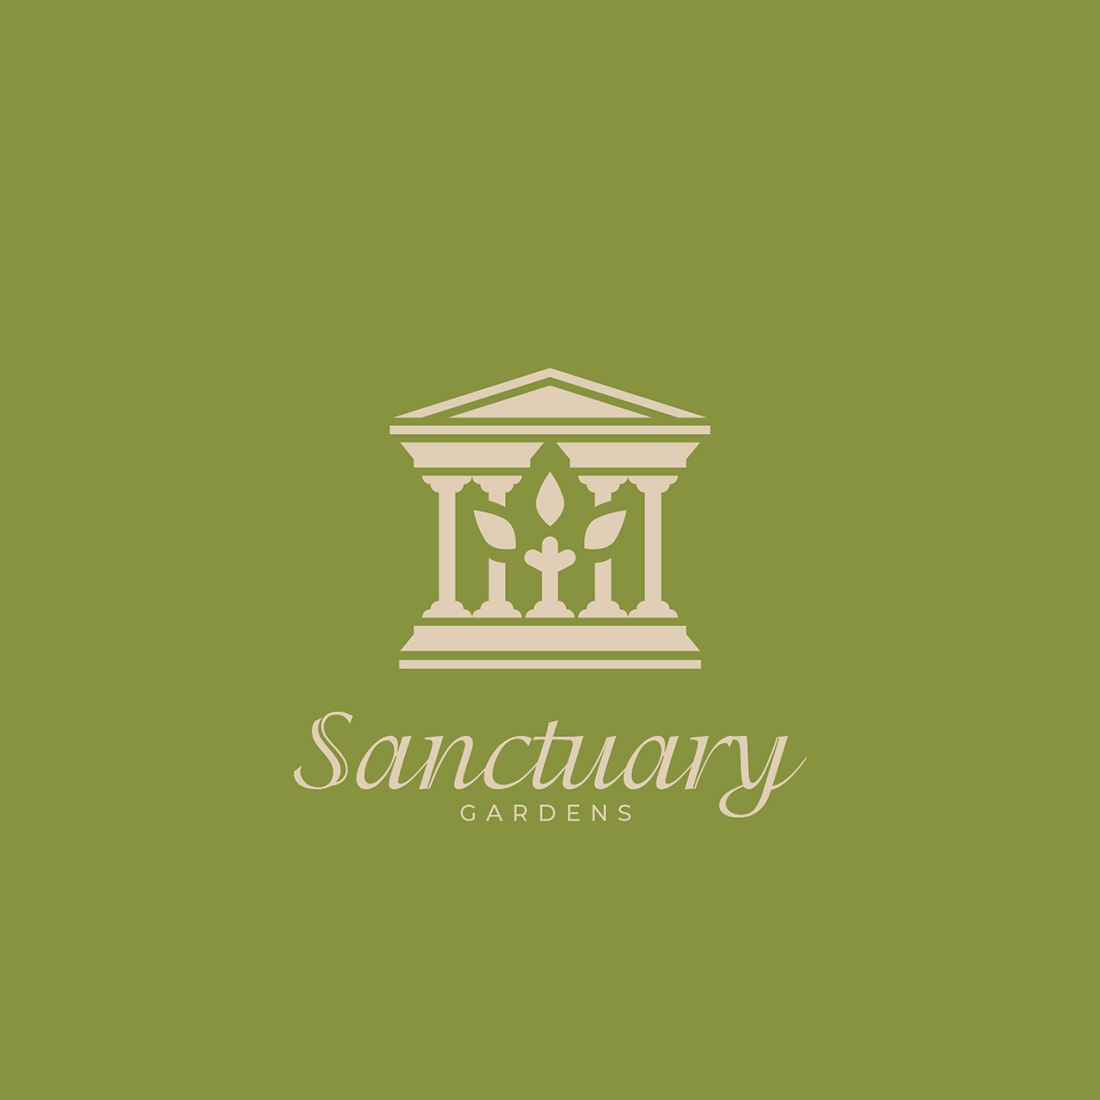 Sanctuary Gardens Third Concept - green logo design2.